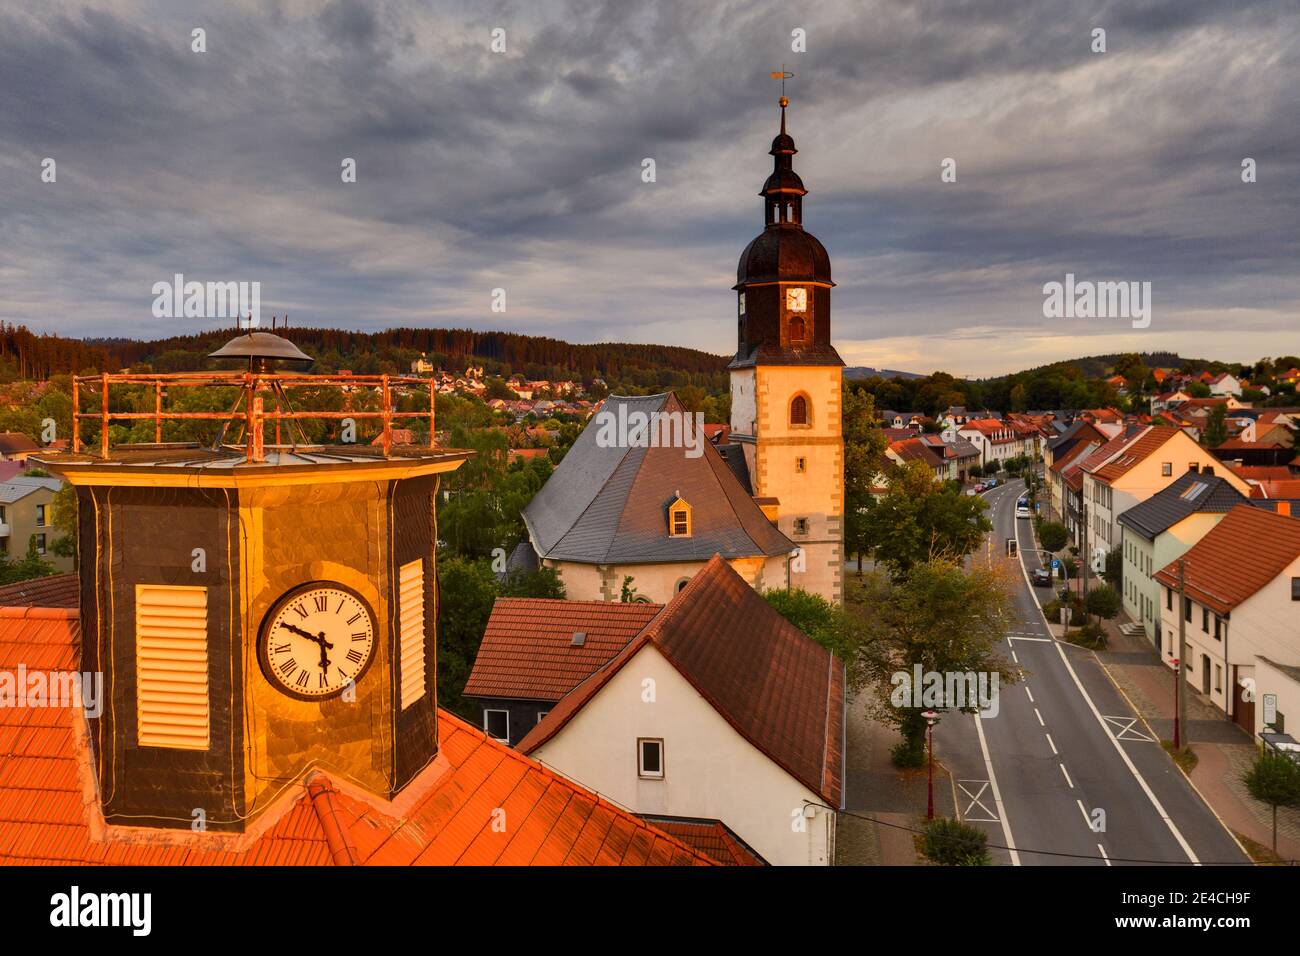 Germania, Turingia, Ilmenau, Langewiesen, Rathausuhr, ex municipio, strada principale, case, chiesa, luce del mattino Foto Stock